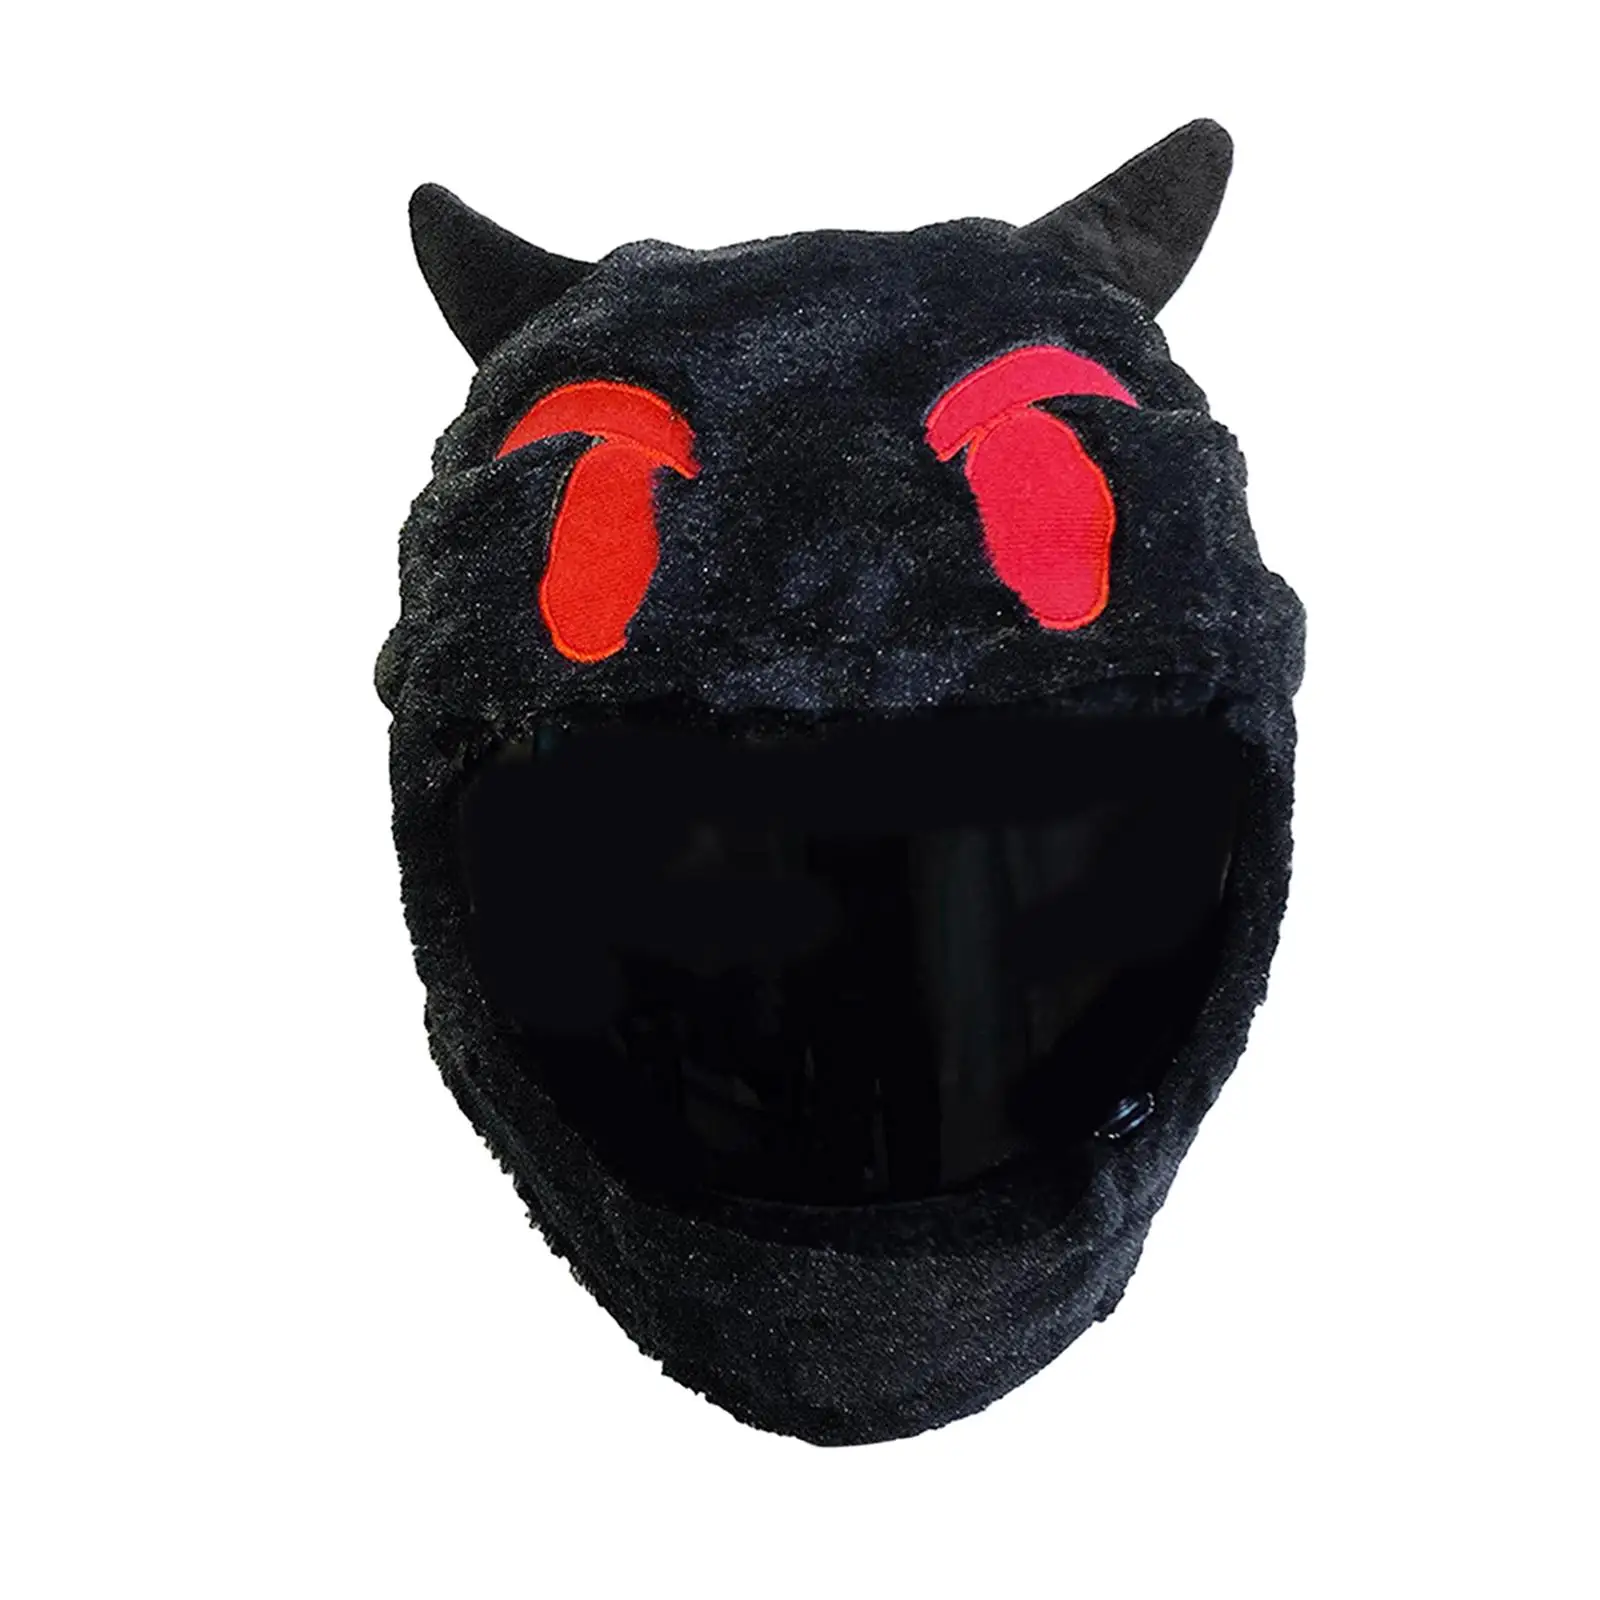 Devil Helmet Cover/ Full Face Helmet Protective Cover/ Cute Gifts for Men Women